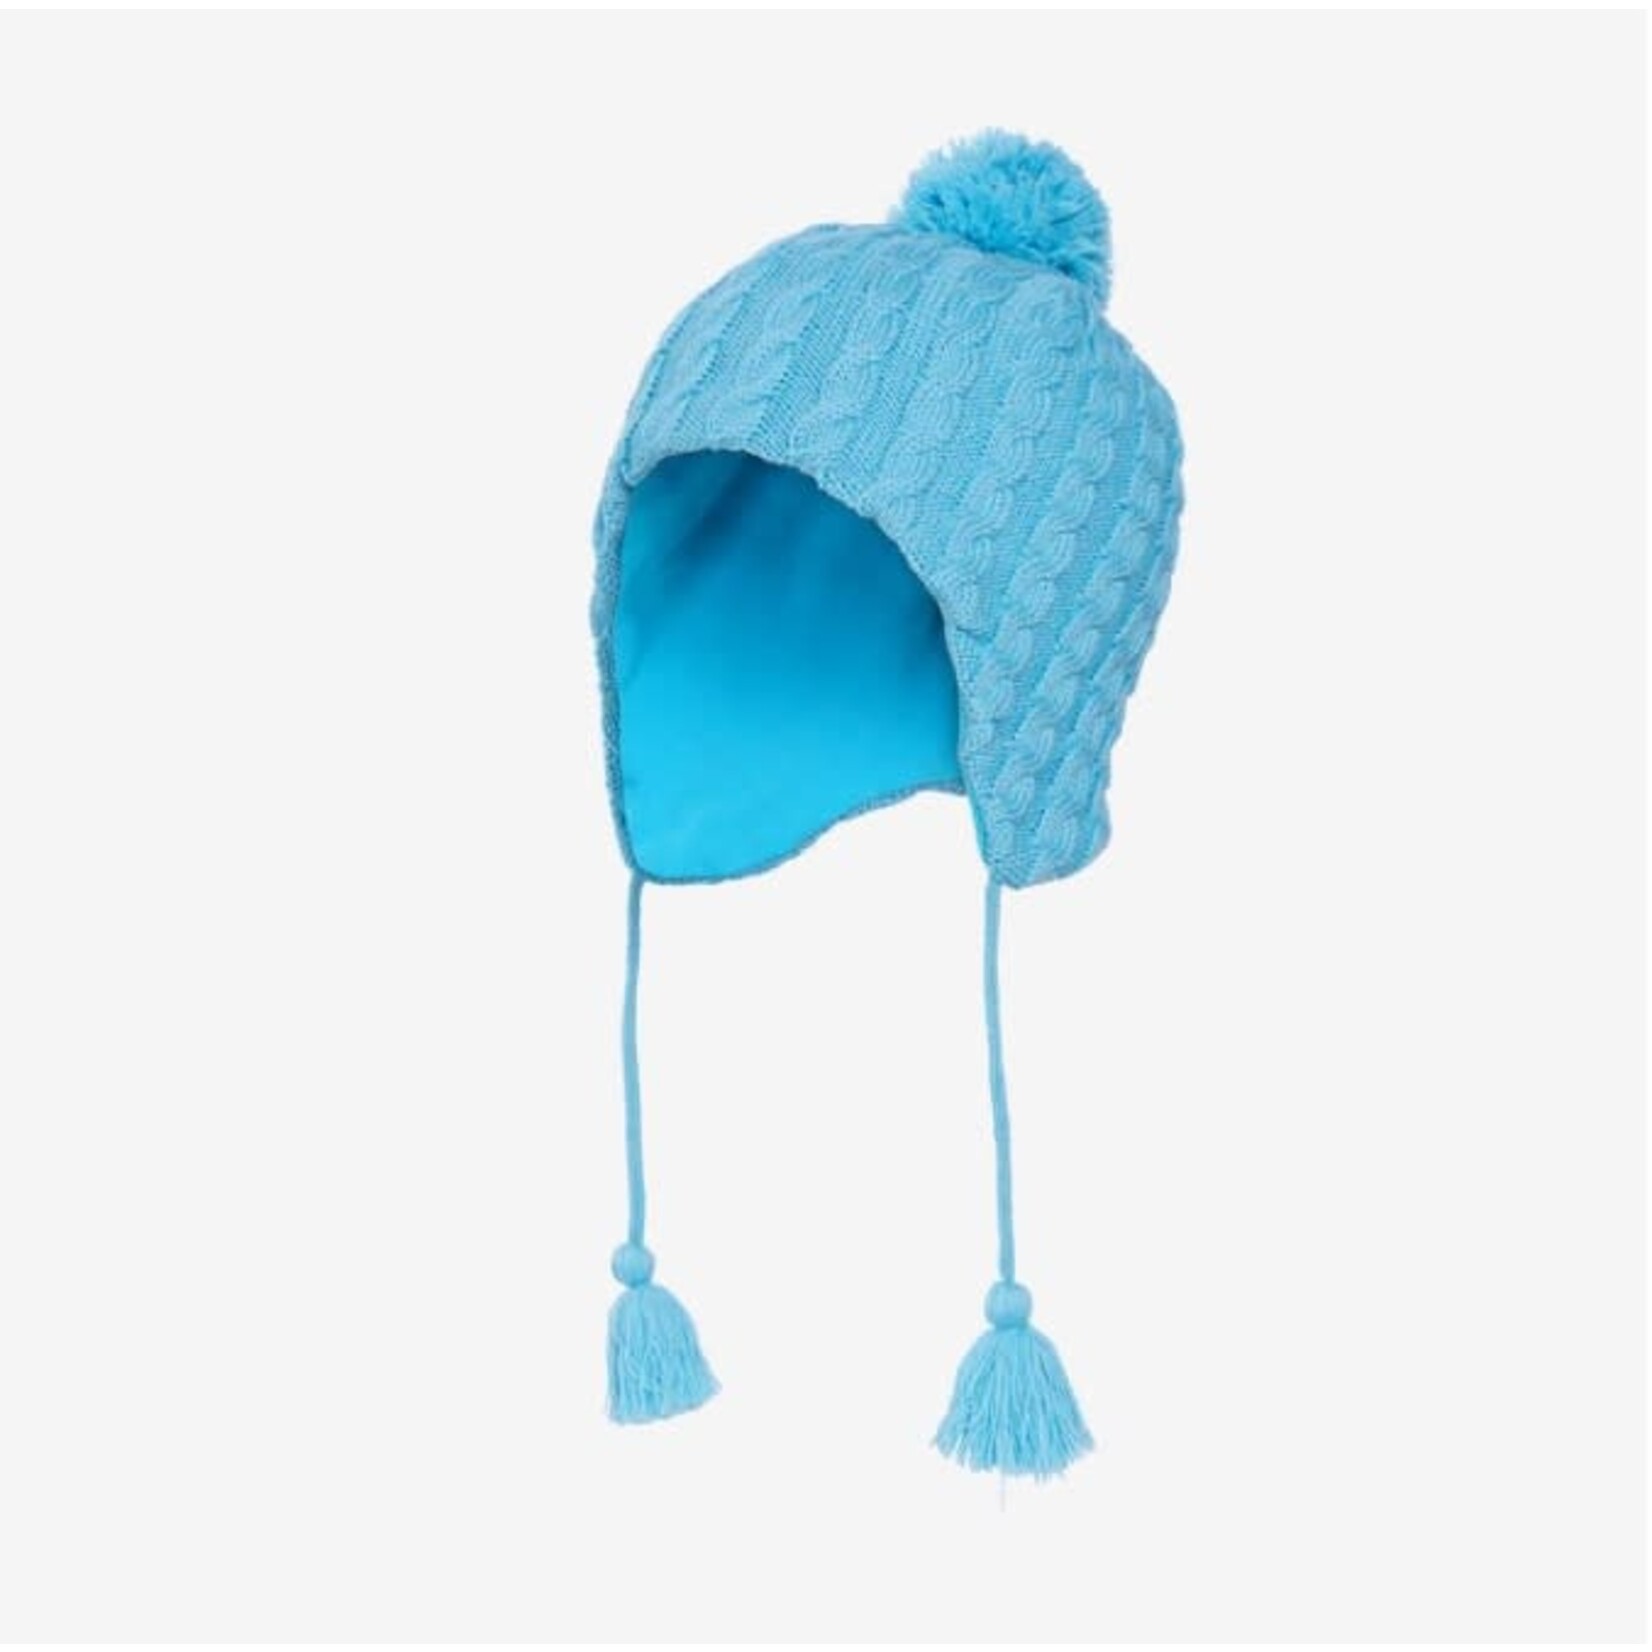 Kombi KOMBI - Peruvian winter hat 'Twiny' Light Blue - Size Children